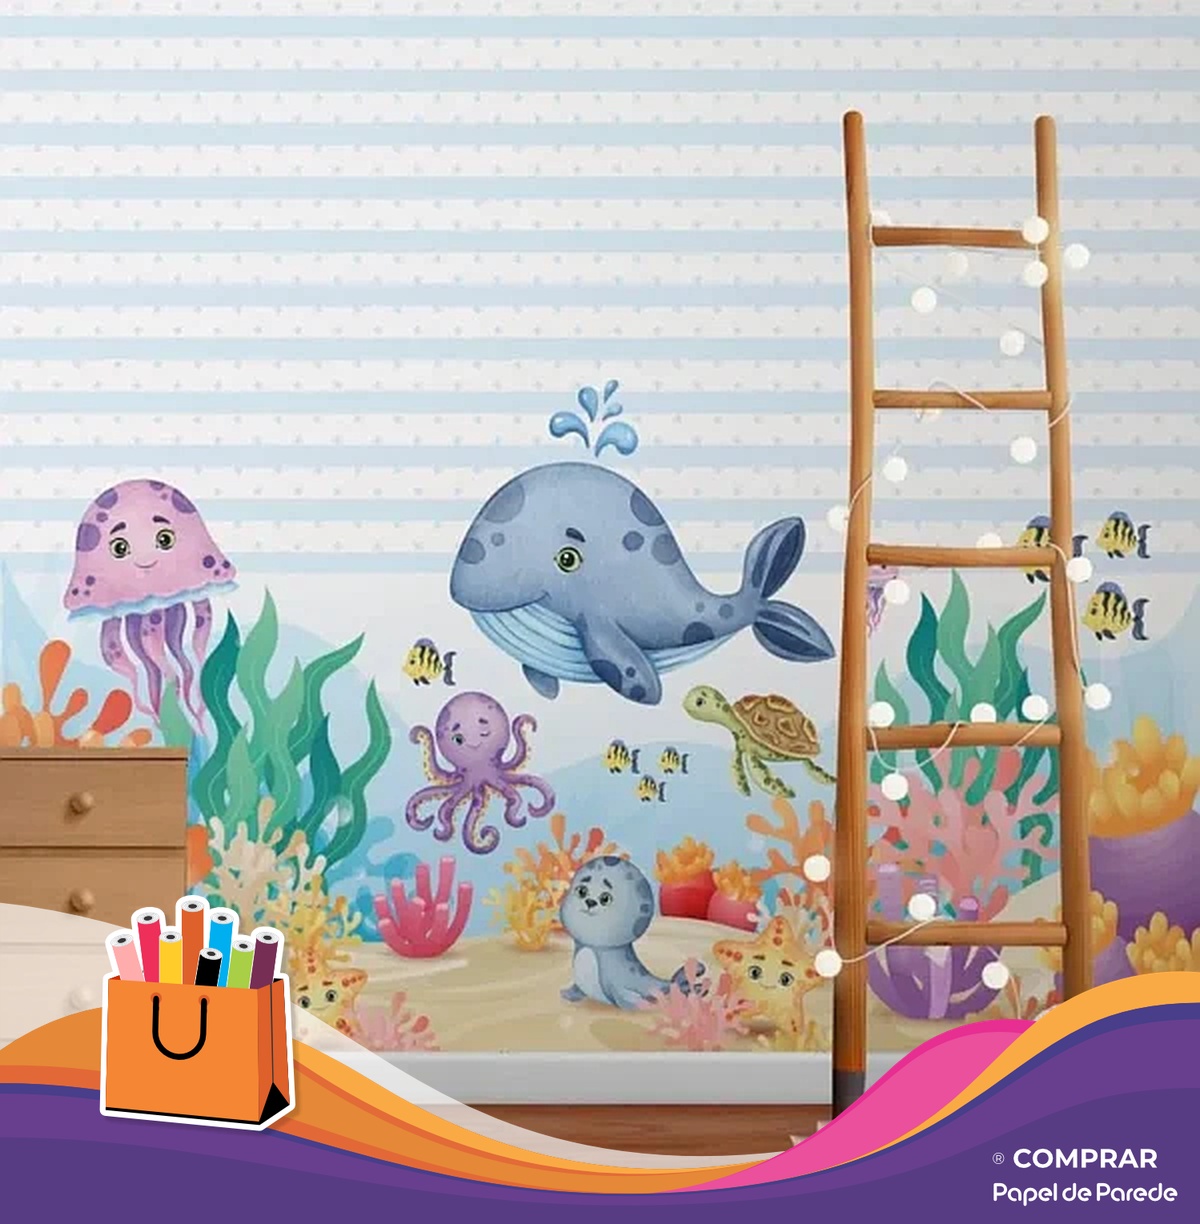 papel de parede fundo do mar infantil aquarelado comprar Papel de Parede Fundo do Mar Infantil Aquarelado bebe criancas comprar papel de parede 600x612